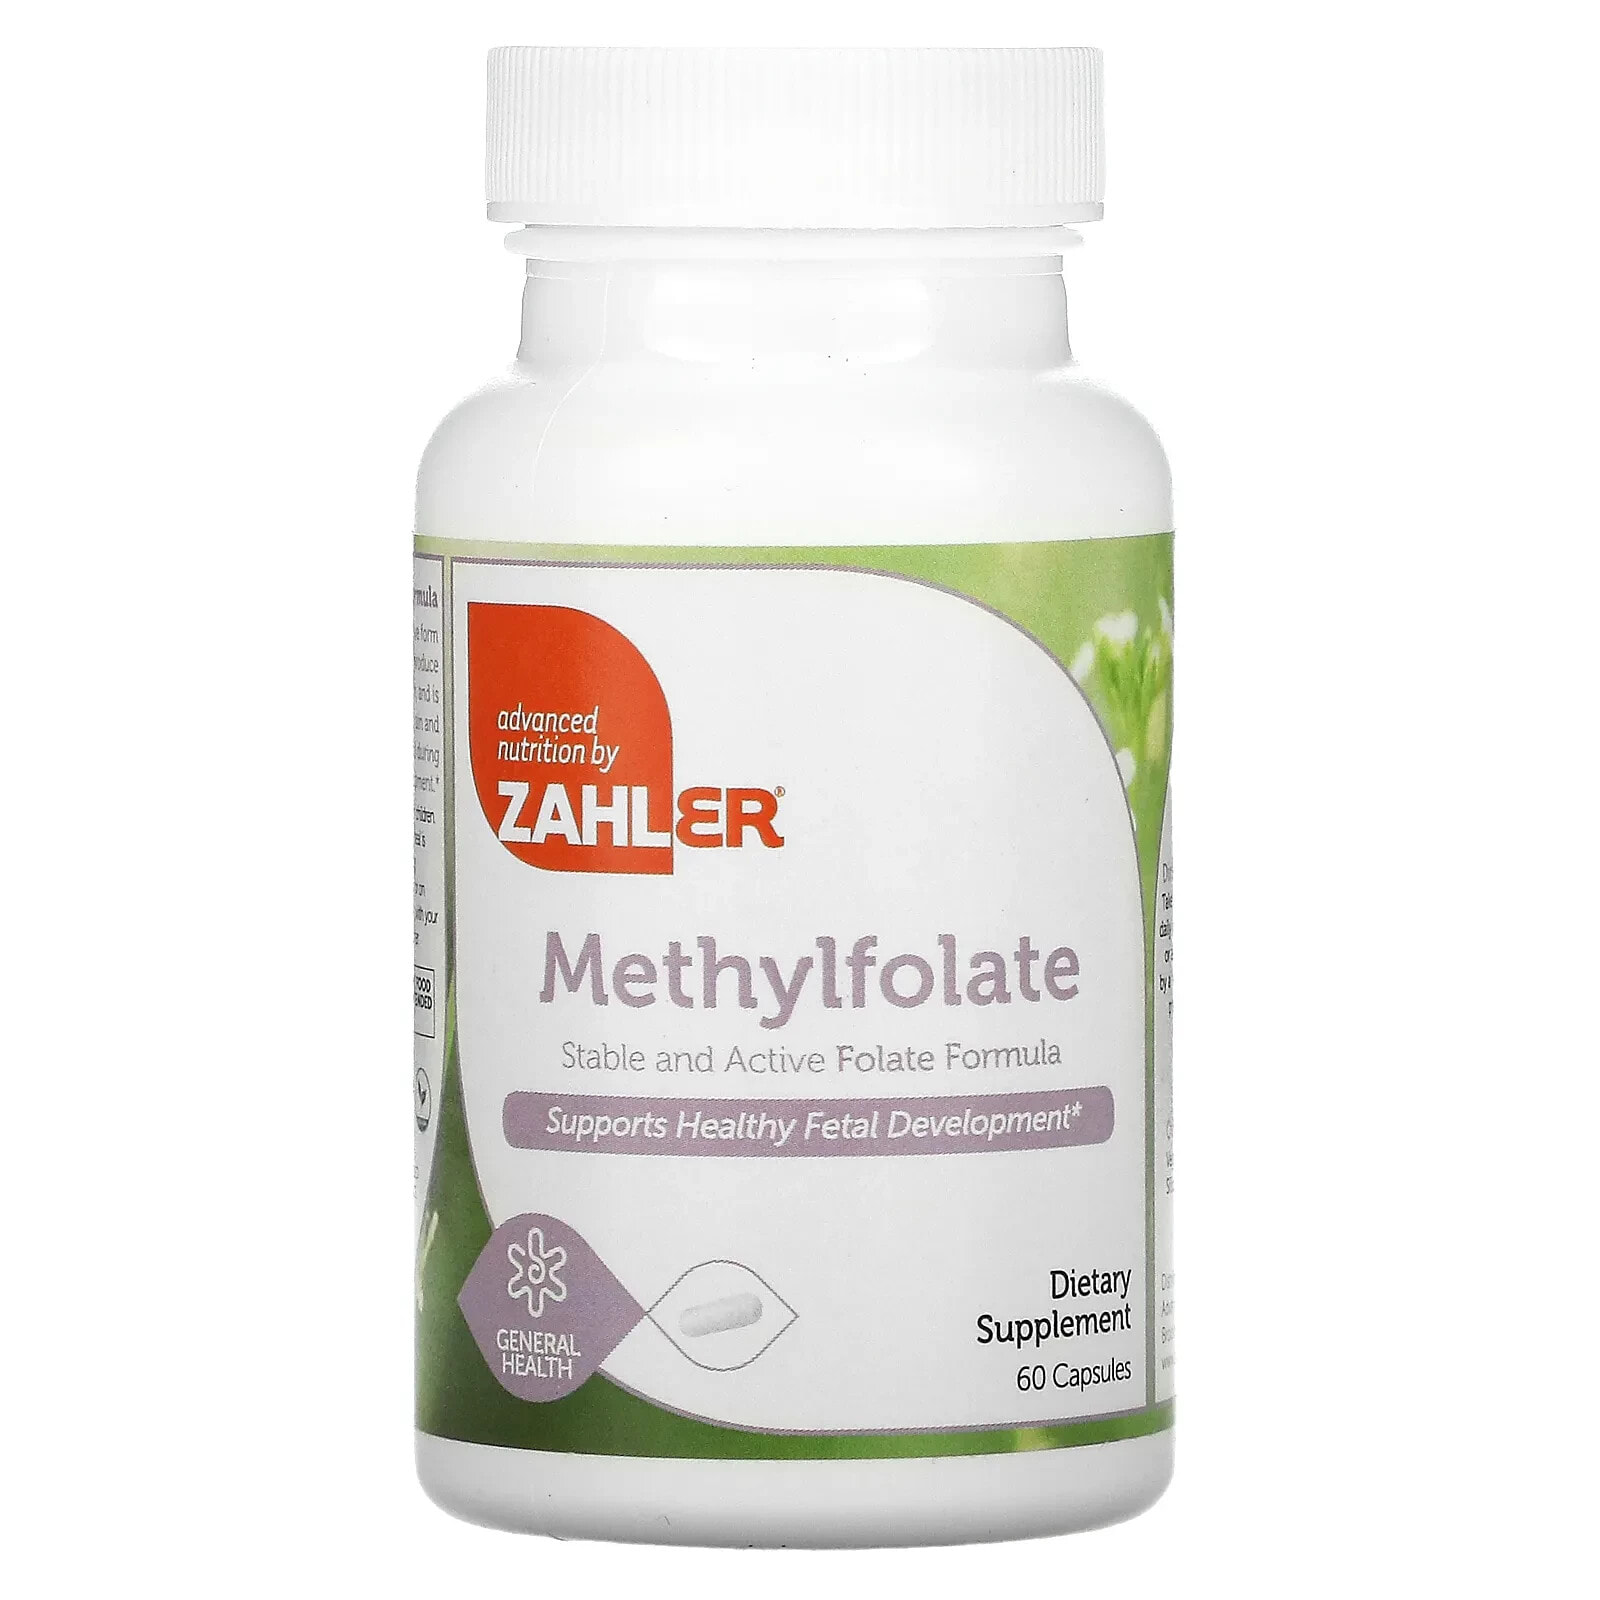 Zahler, метилфолат, стабильный и активный фолат, способствует здоровому развитию плода, 120 капсул